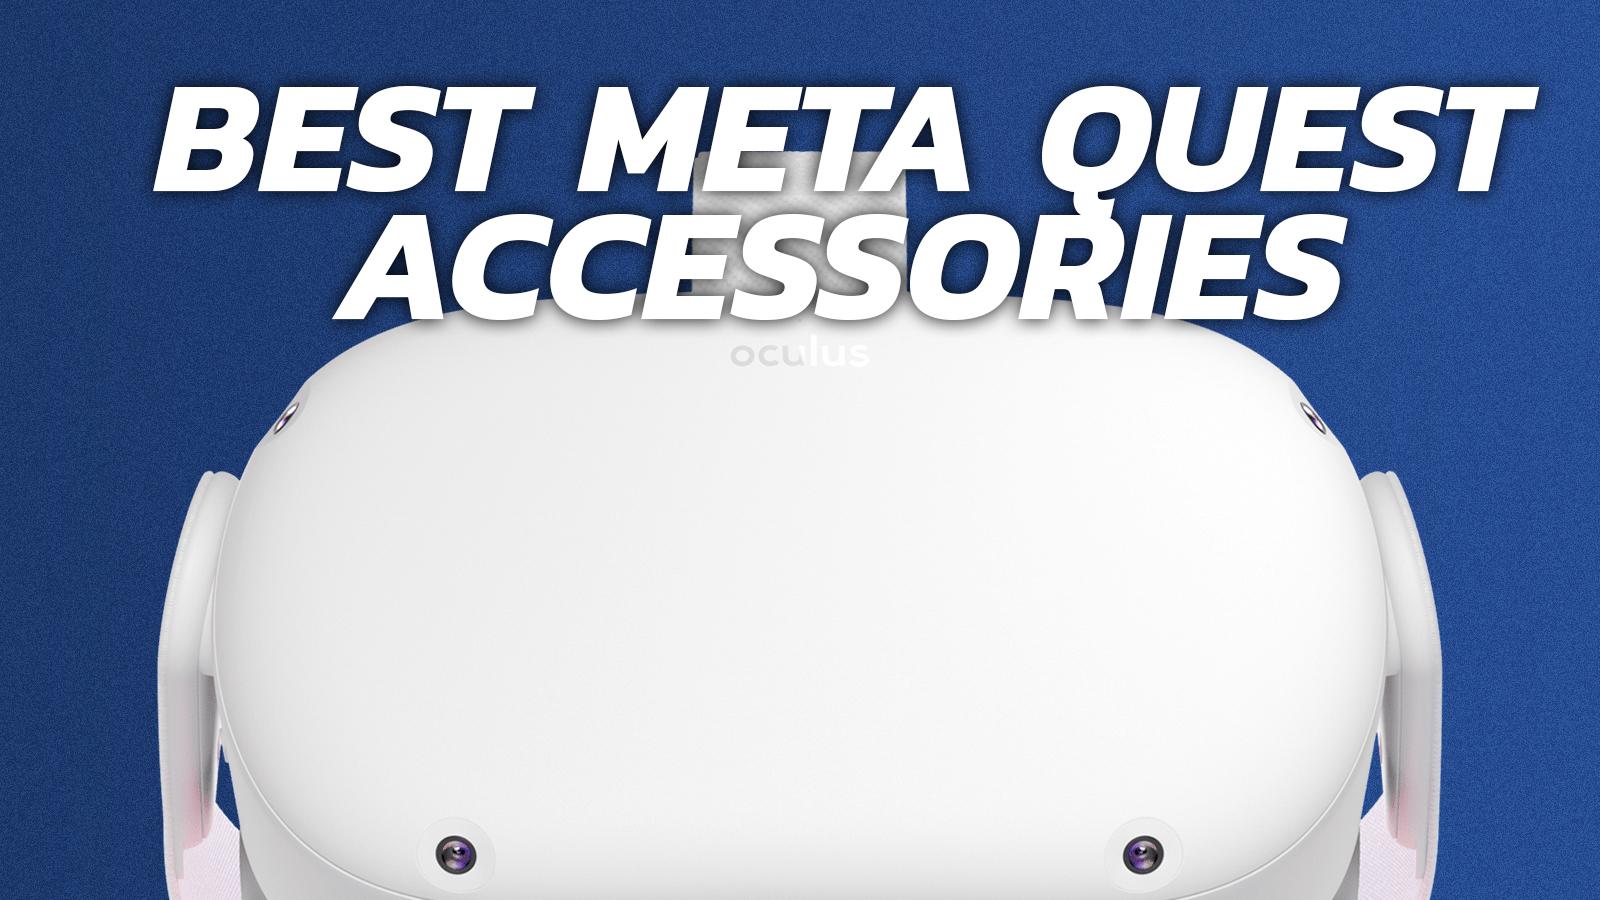 Best Quest 3 Accessories: Cases, Head Straps, Lenses & More